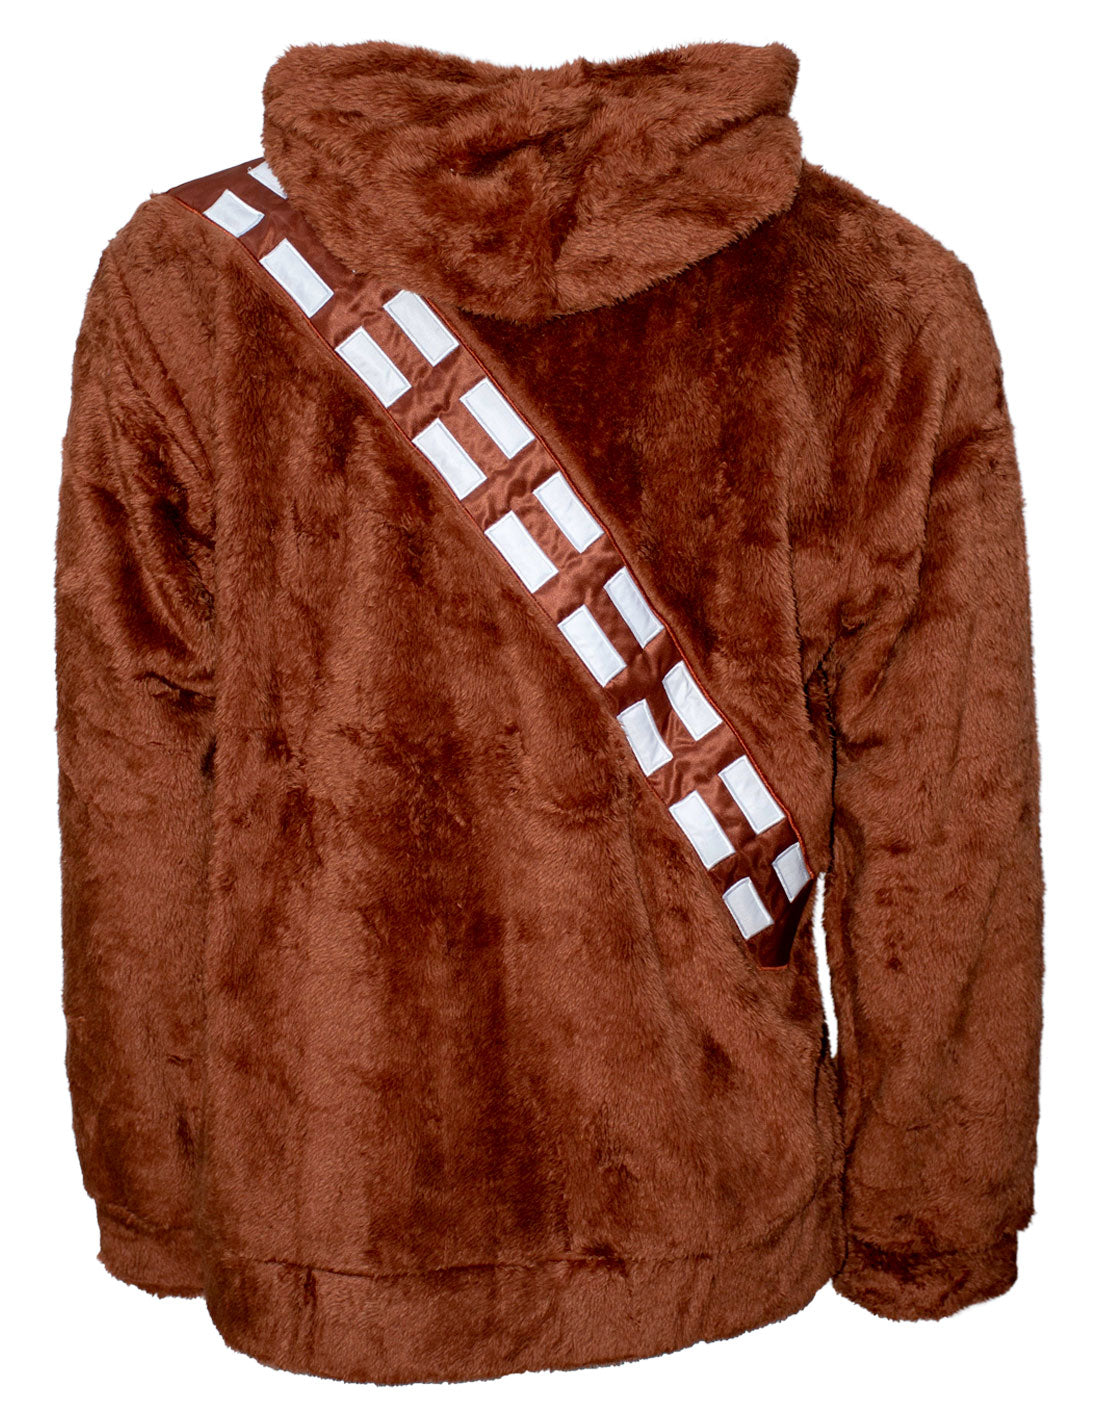 Star Wars Plush Sweatshirt - Chewbacca